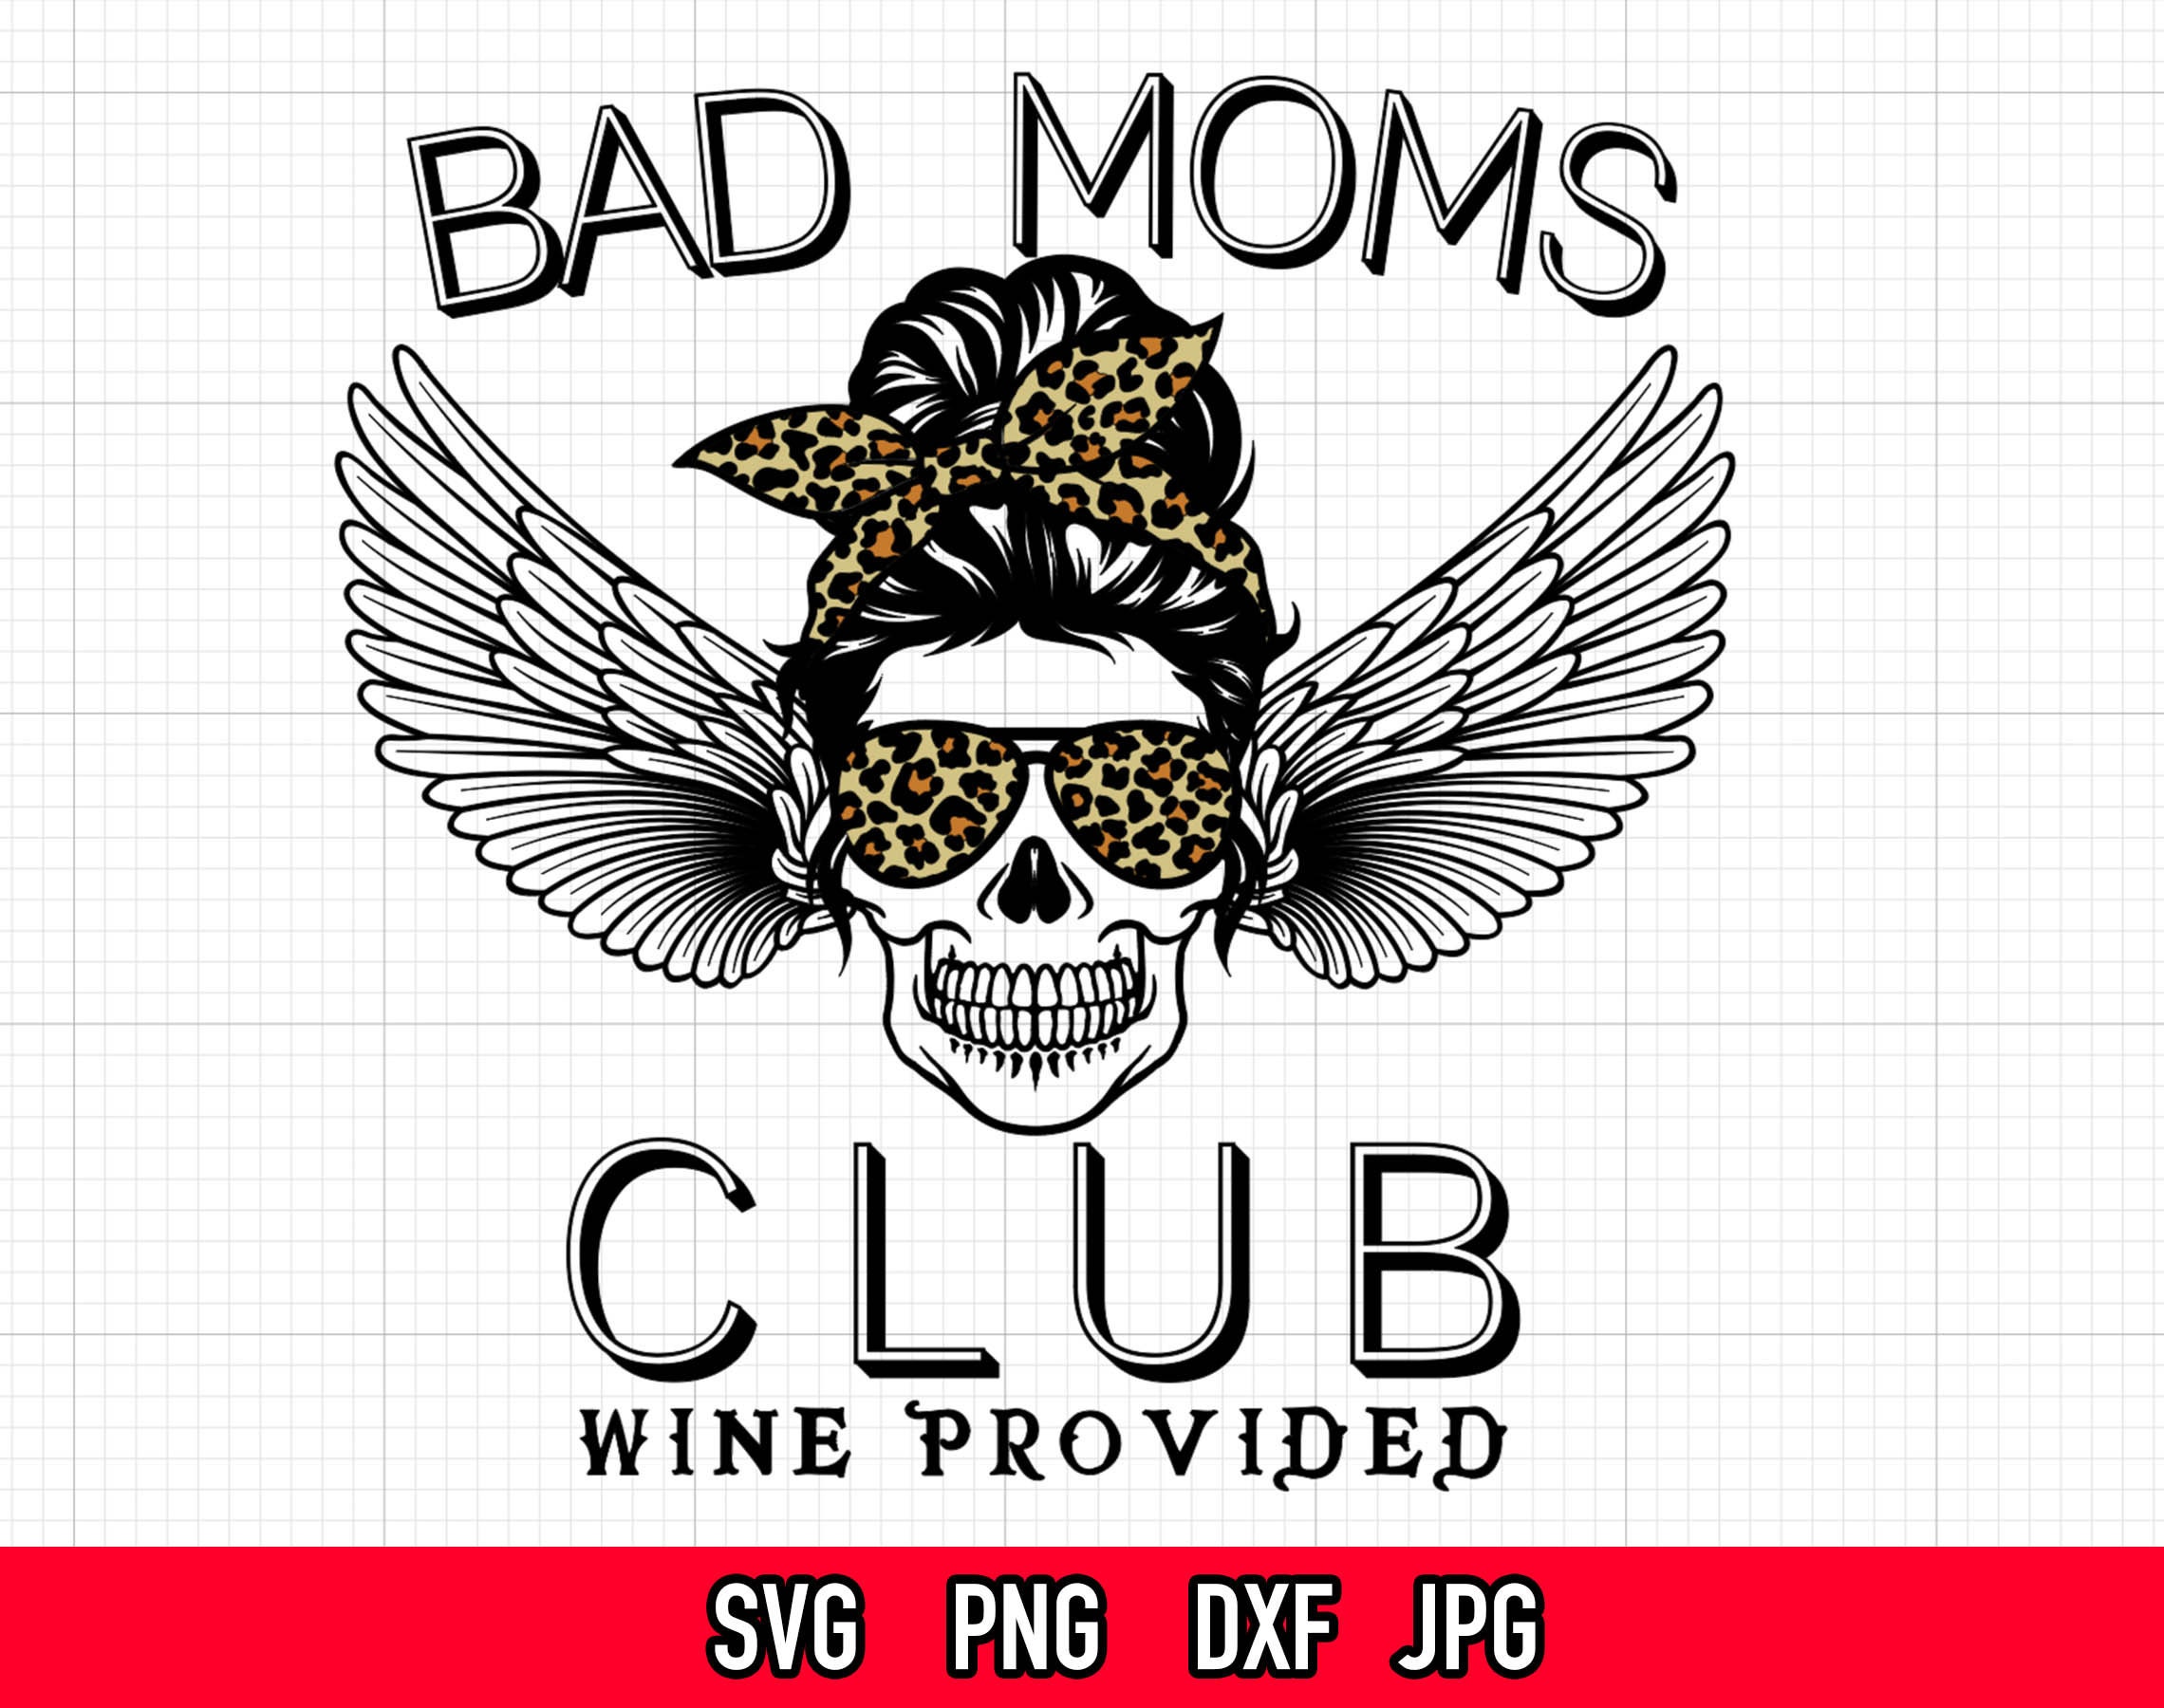 Bad Moms Club svg Wine Provided svg Skull Messy Bun Mom | Etsy